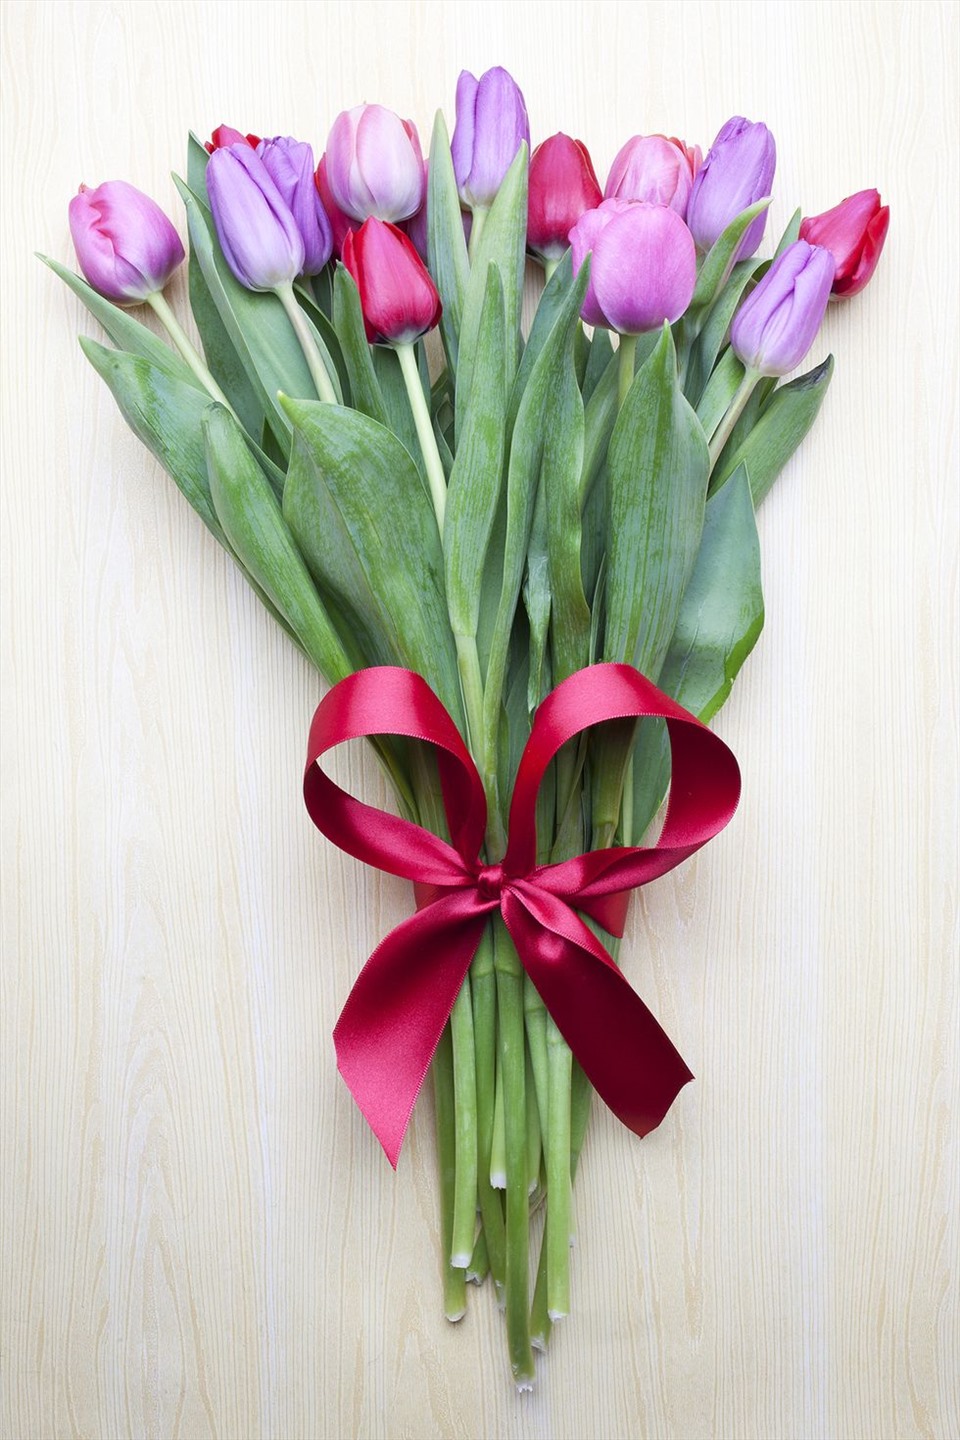 6. Hoa tulip  Hoa tulip tượng trưng cho tình yêu hoàn hảo. Những bông hoa thanh lịch truyền tải thông điệp ấm áp và là một lựa chọn tốt cho ngày lễ tình nhân.